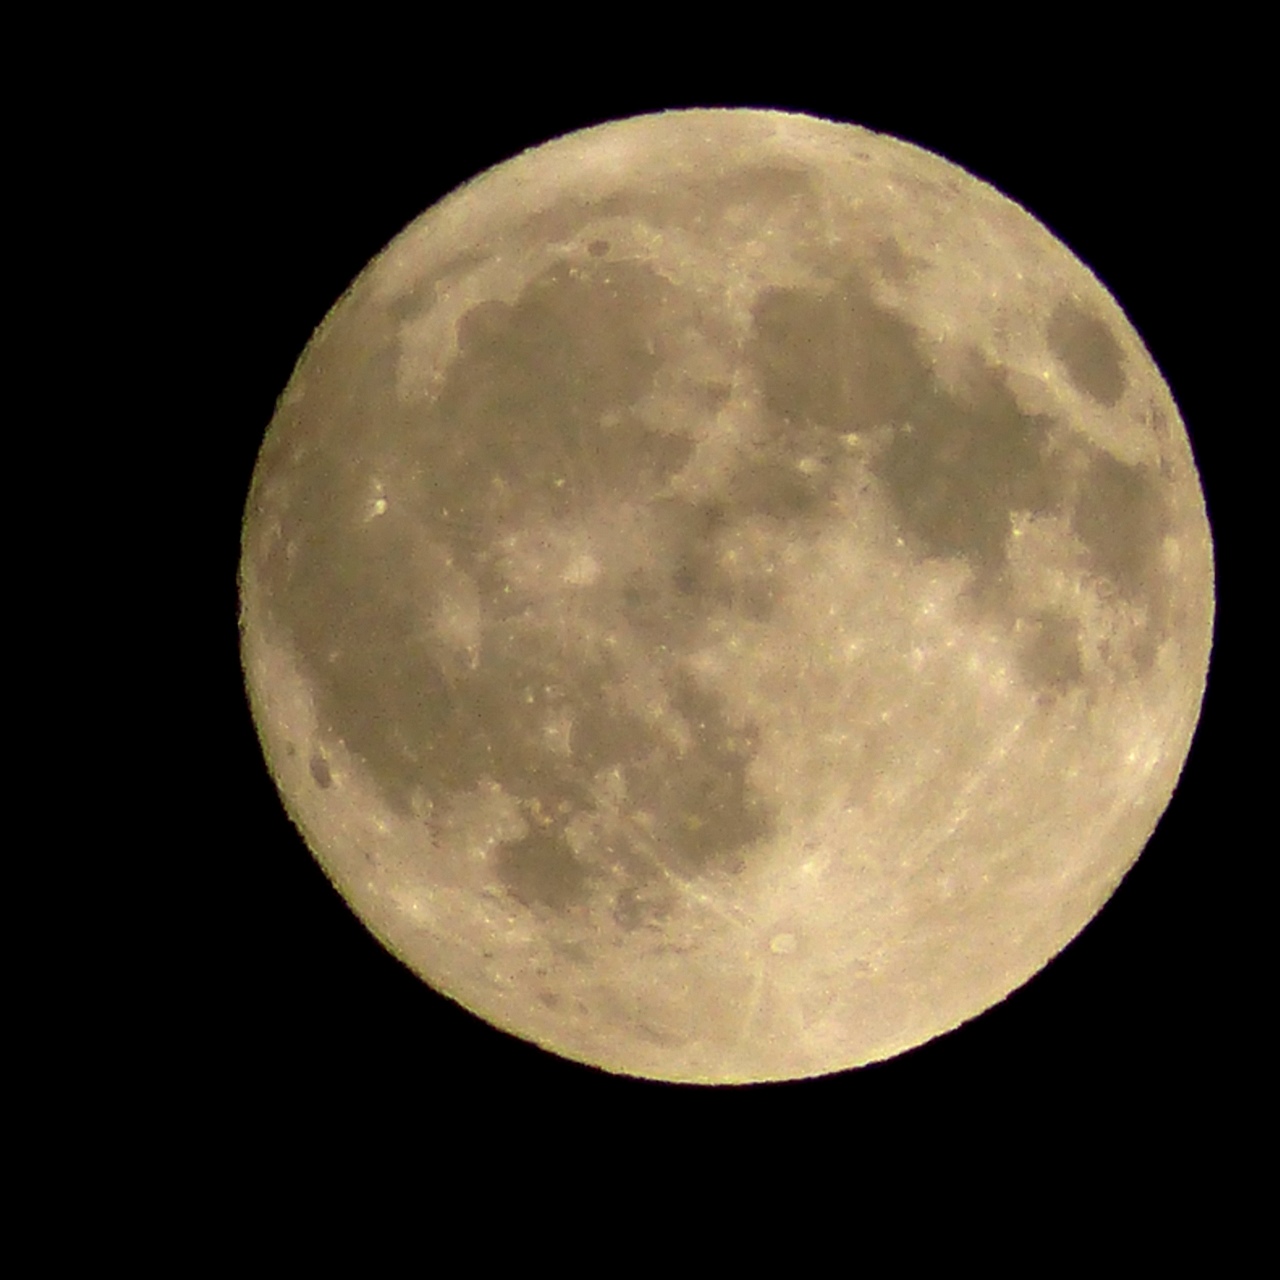 Lune d'équinoxe - Névache - 21 septembre 2017 - Photo Copyright Christian Rau